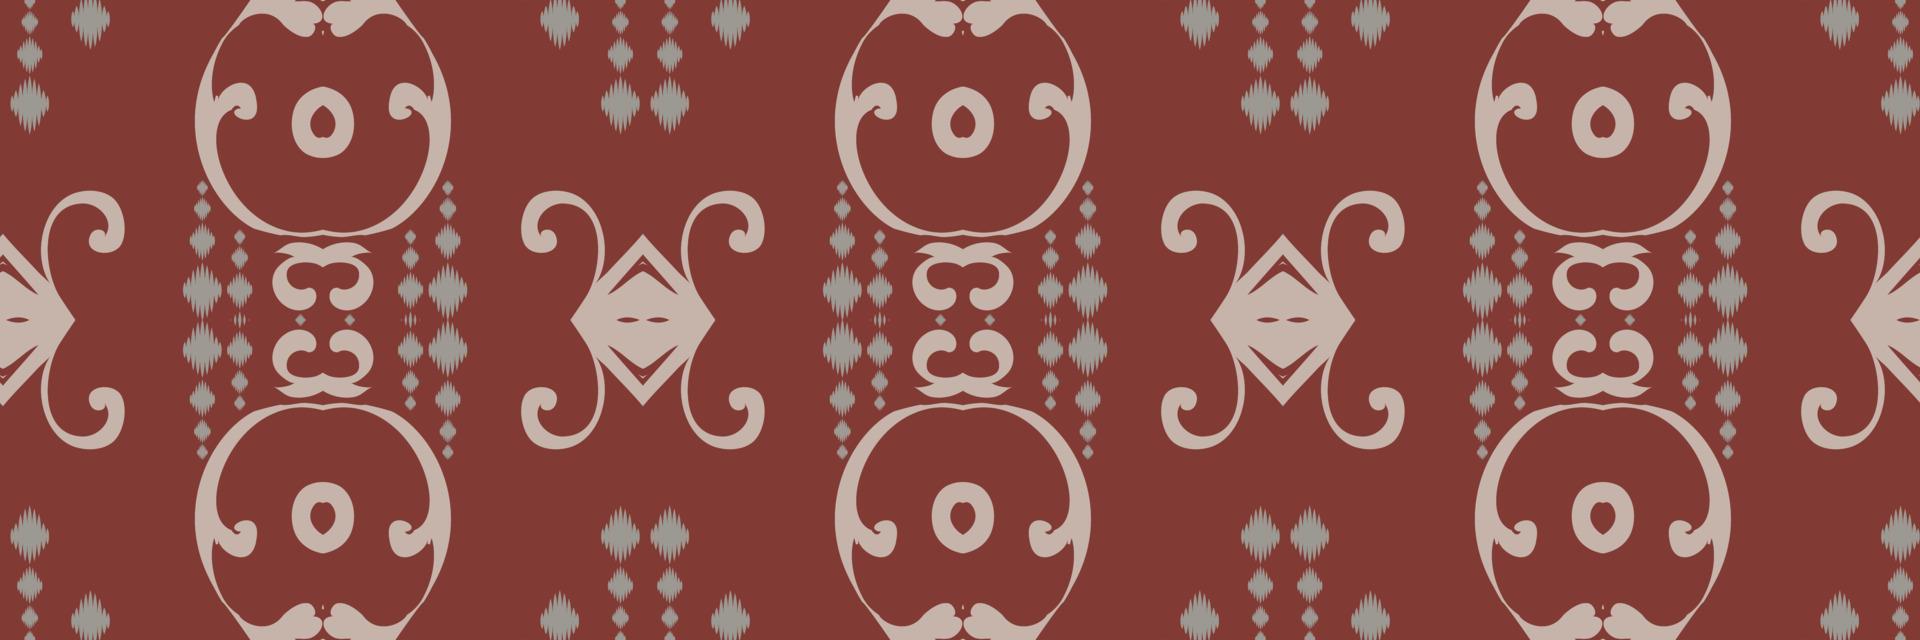 motivo ikat chevron batik têxtil sem costura padrão design de vetor digital para impressão saree kurti borneo tecido borda escova símbolos amostras roupas de festa